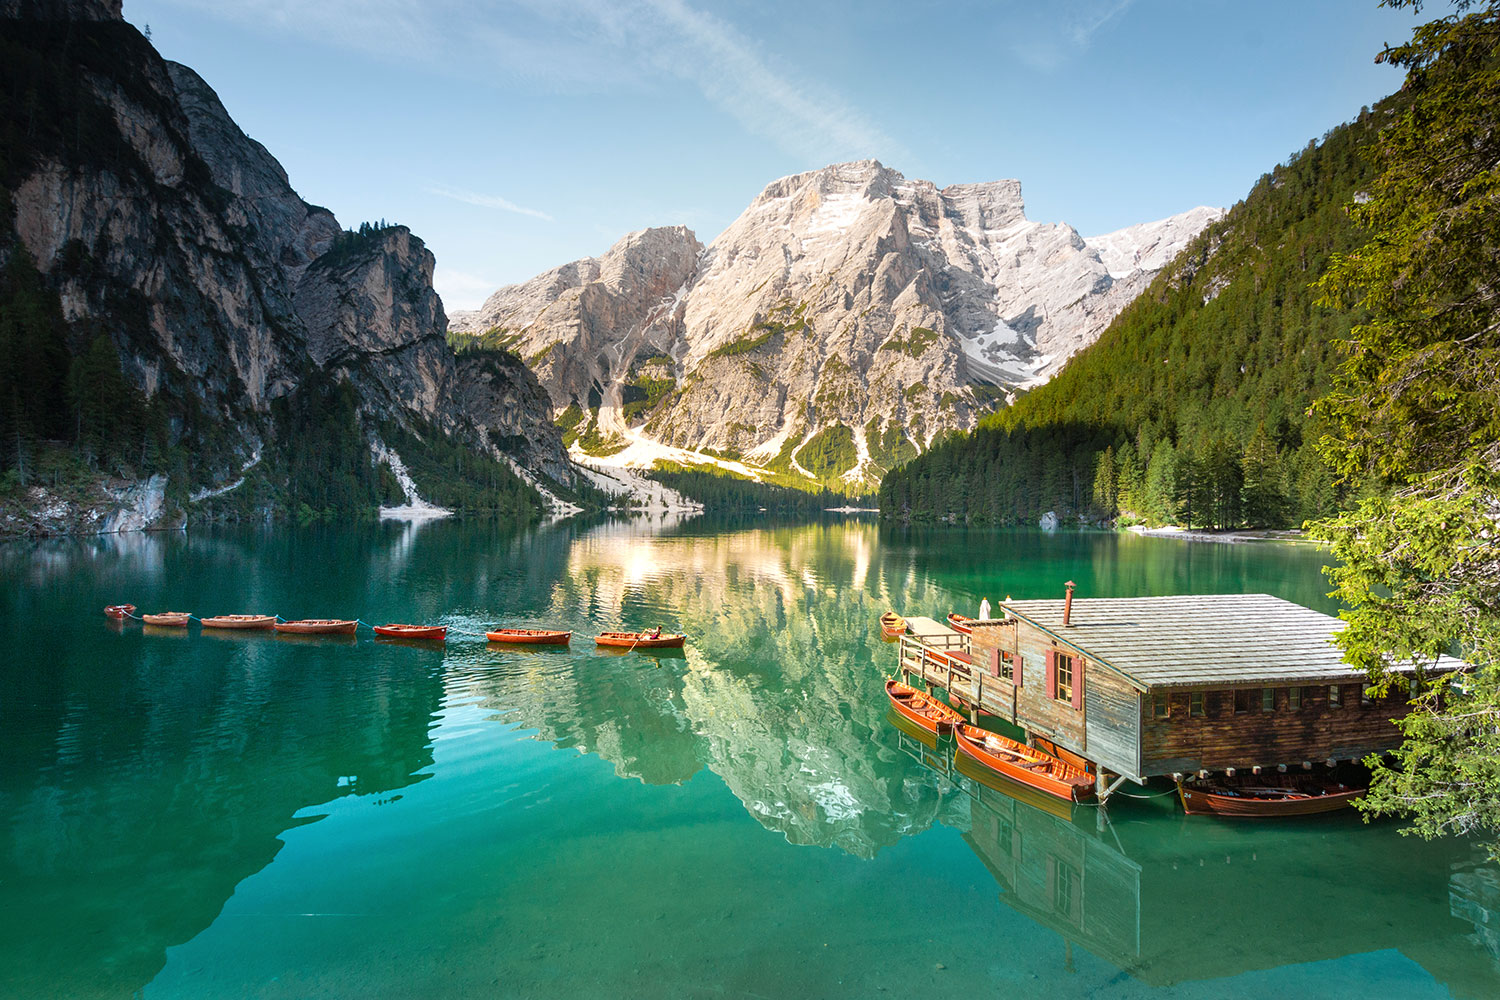 Lago di Braies, Dolomites, Italie / Lago di Braies, Dolomites, Italy